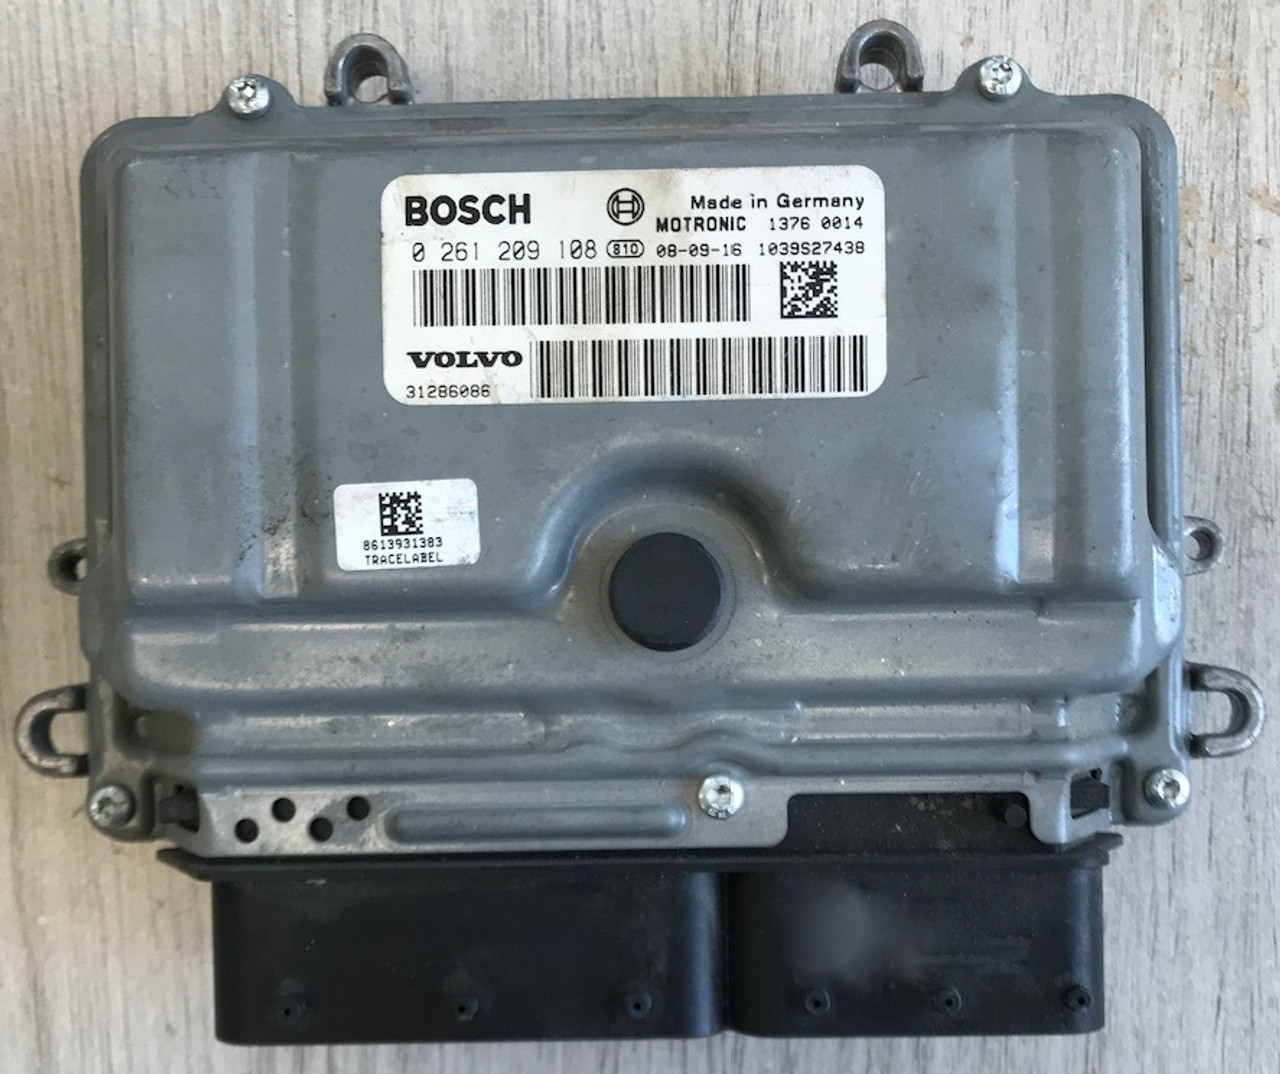 Bosch Engine ECU, Volvo S60 II 2.5T5, S80 II 2.5 FT,T, V70 III 2.5 FT,T, 0261209108, 0 261 209 108, 31286086